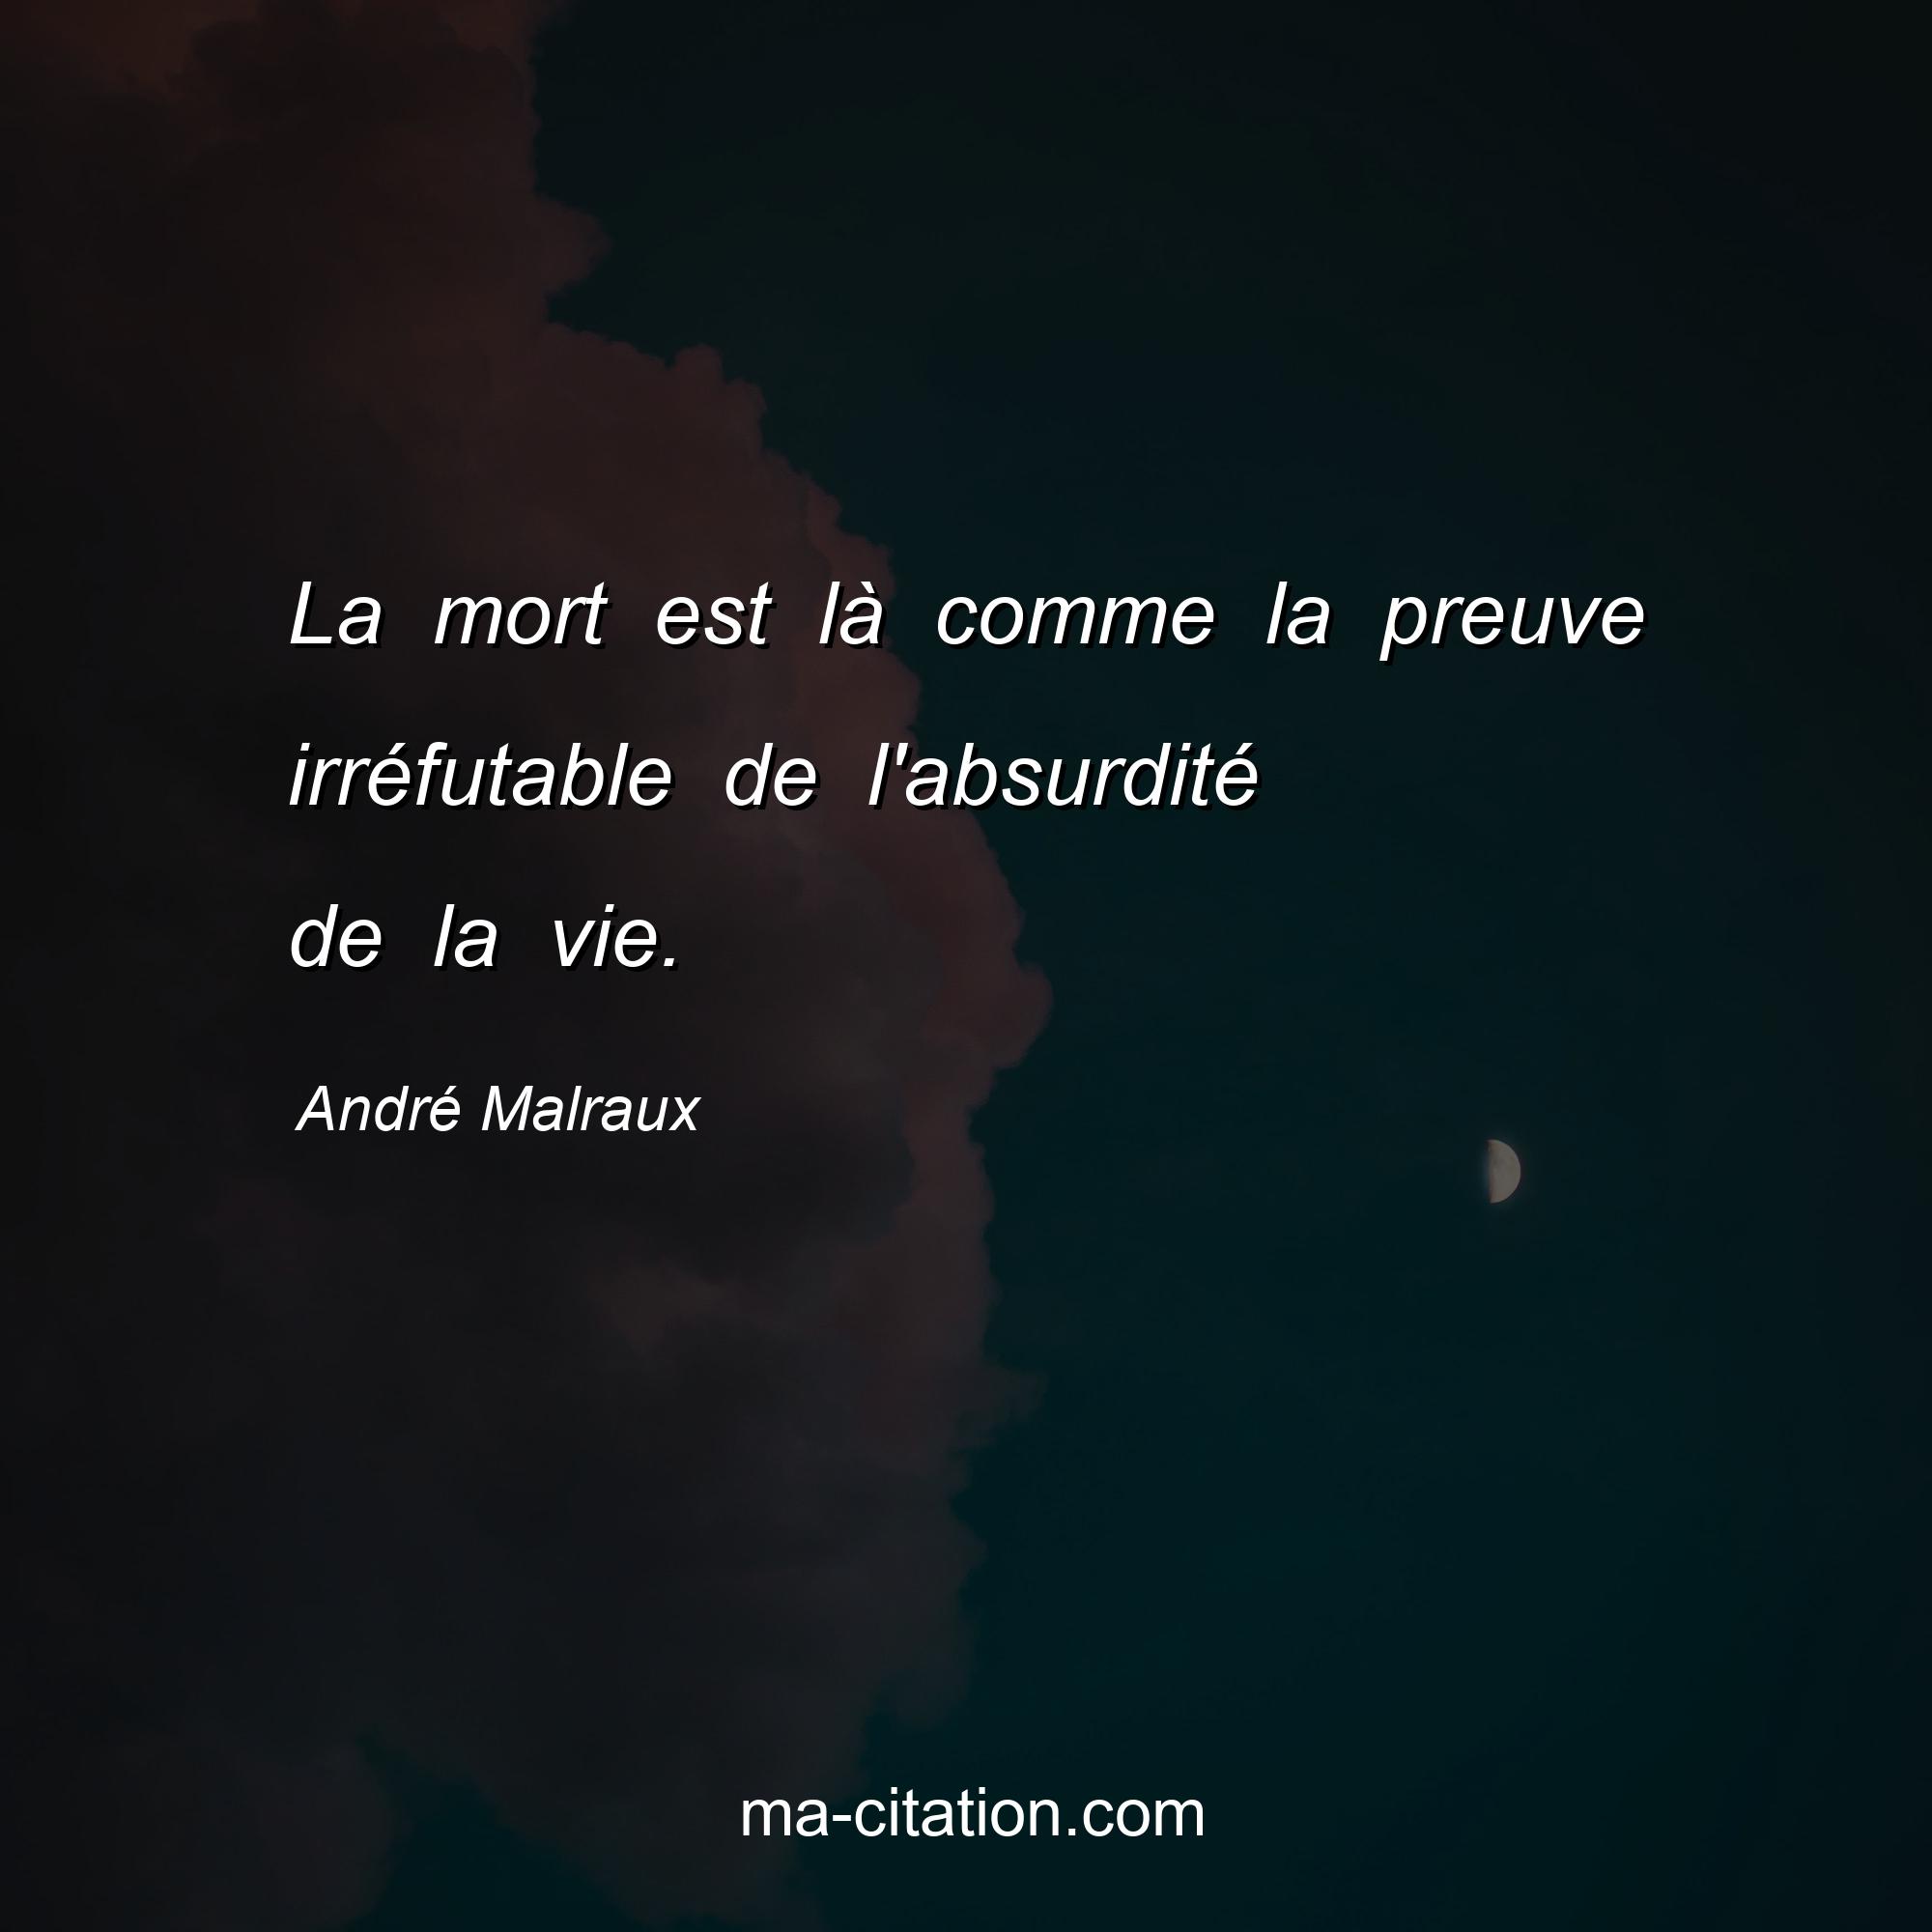 André Malraux : La mort est là comme la preuve irréfutable de l'absurdité de la vie.